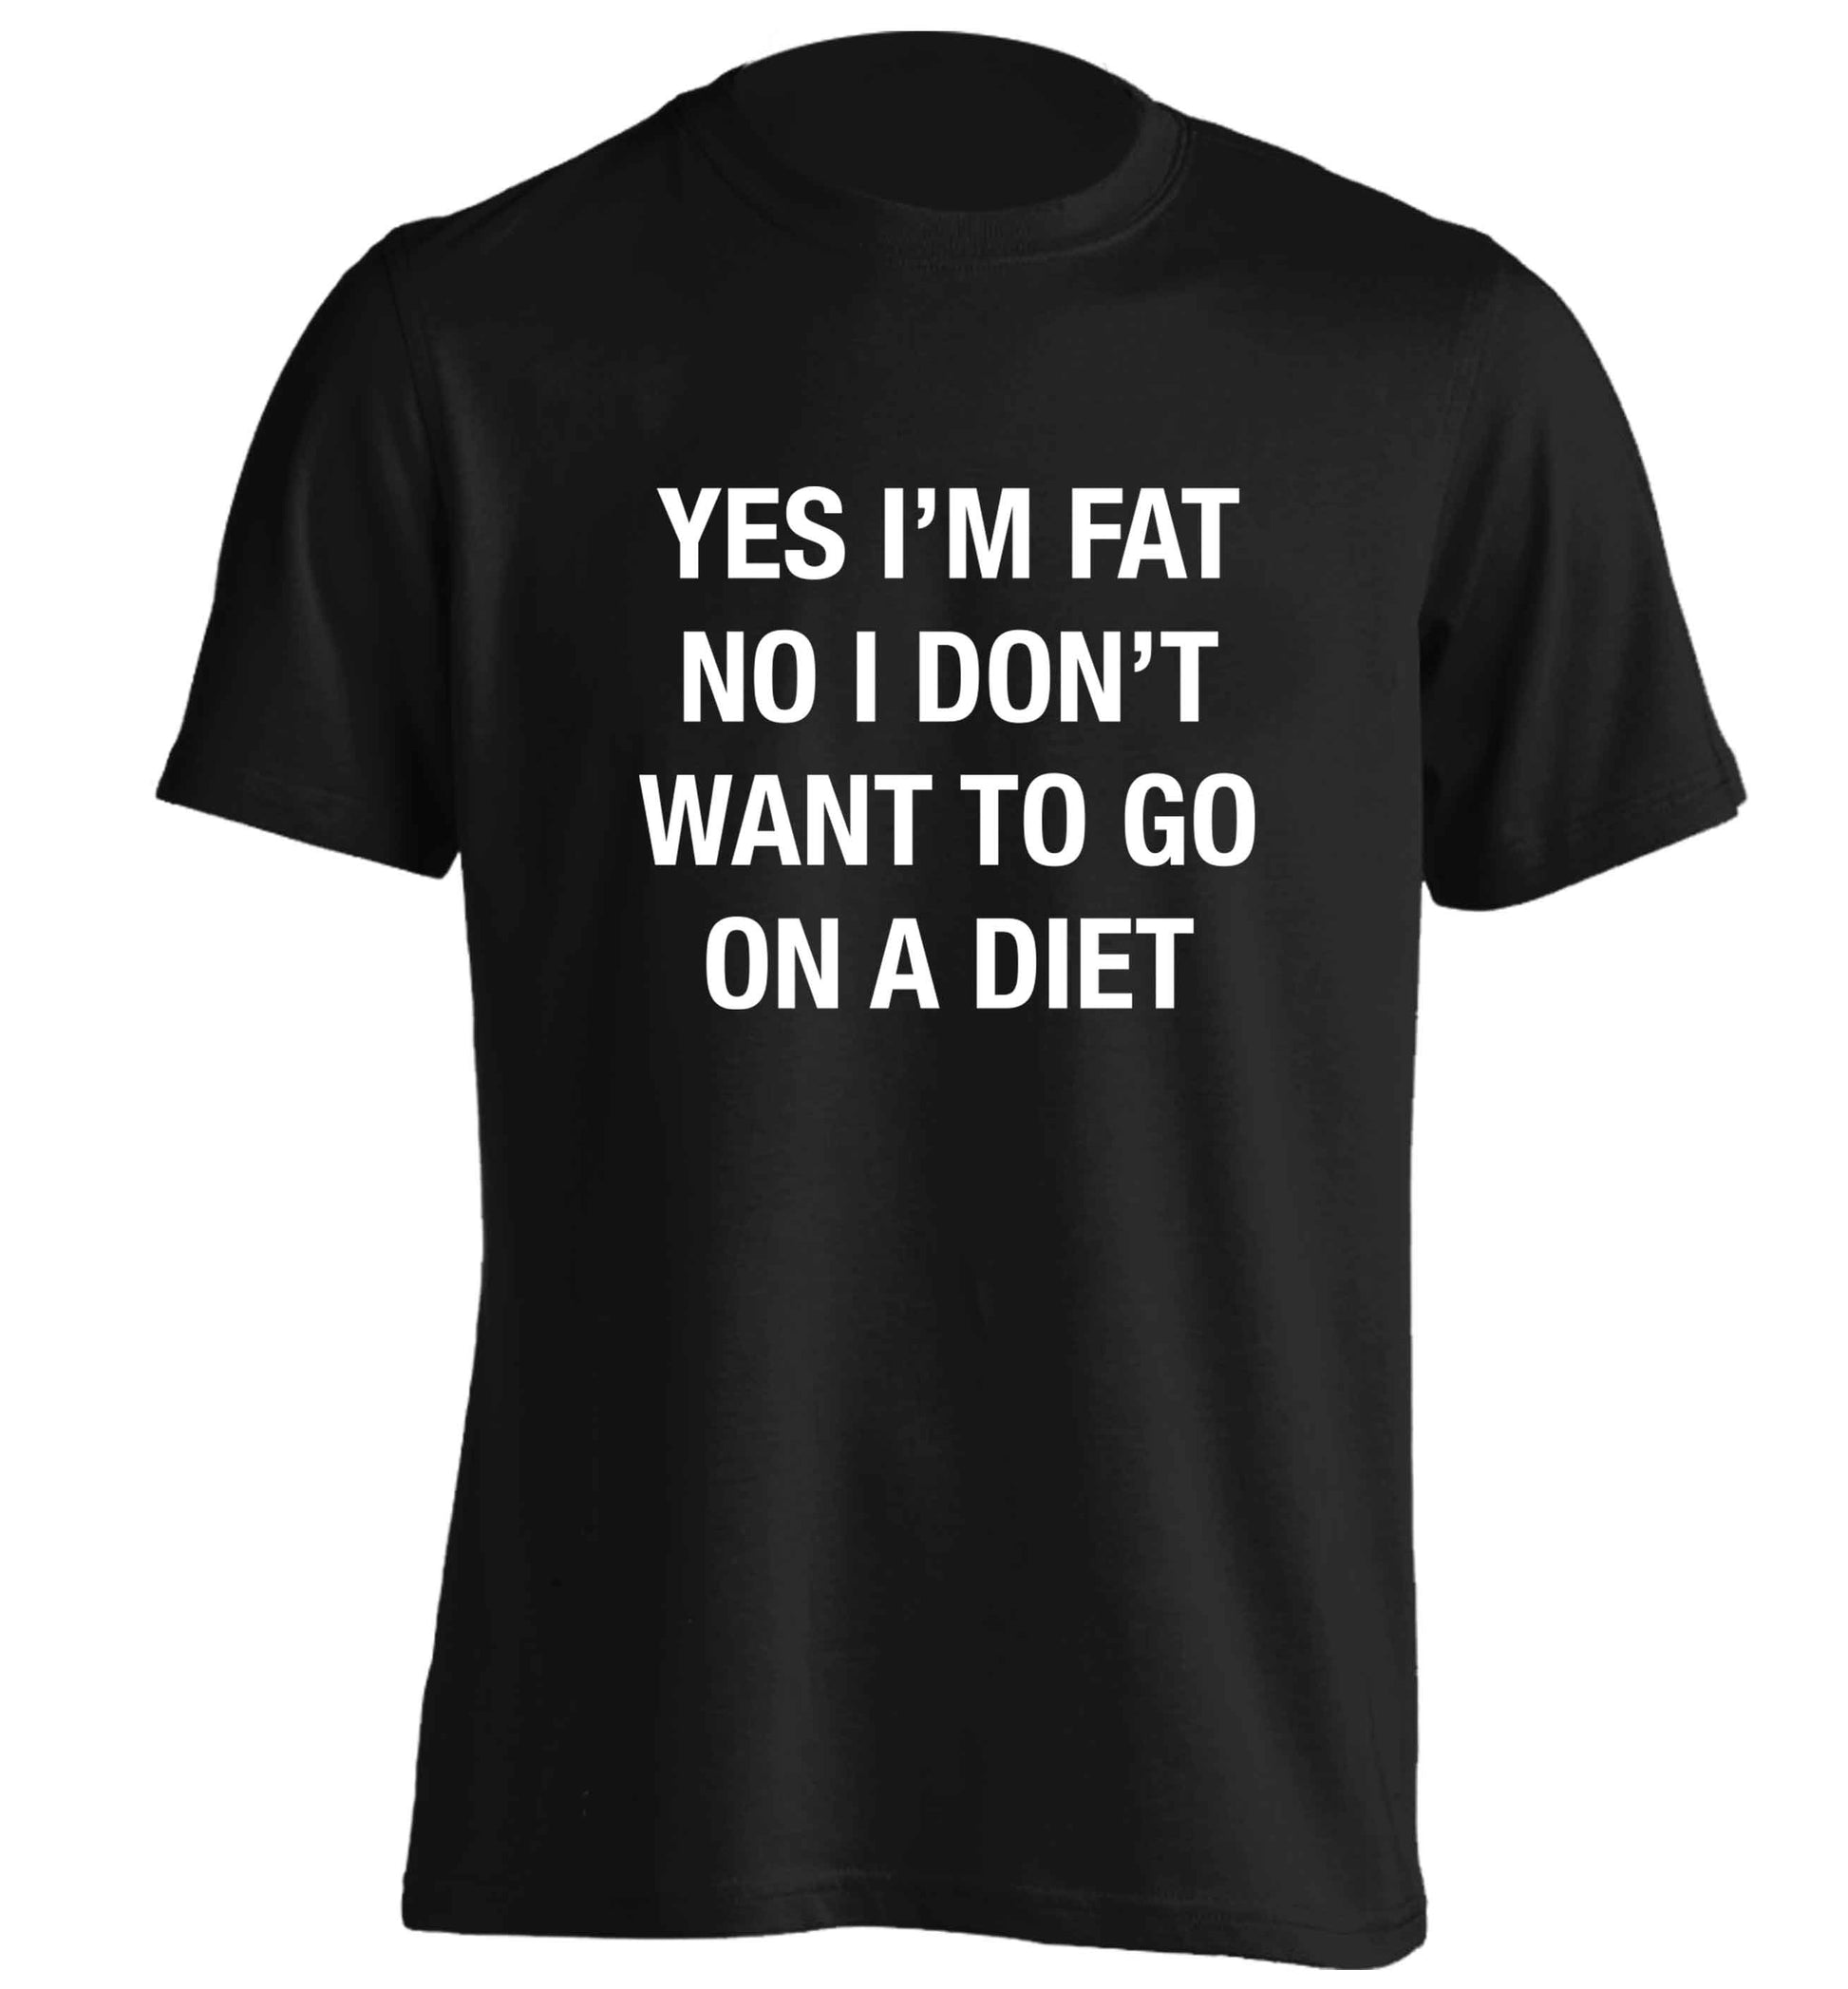 Yes I'm fat, no I don't want to go on a diet adults unisex black Tshirt 2XL